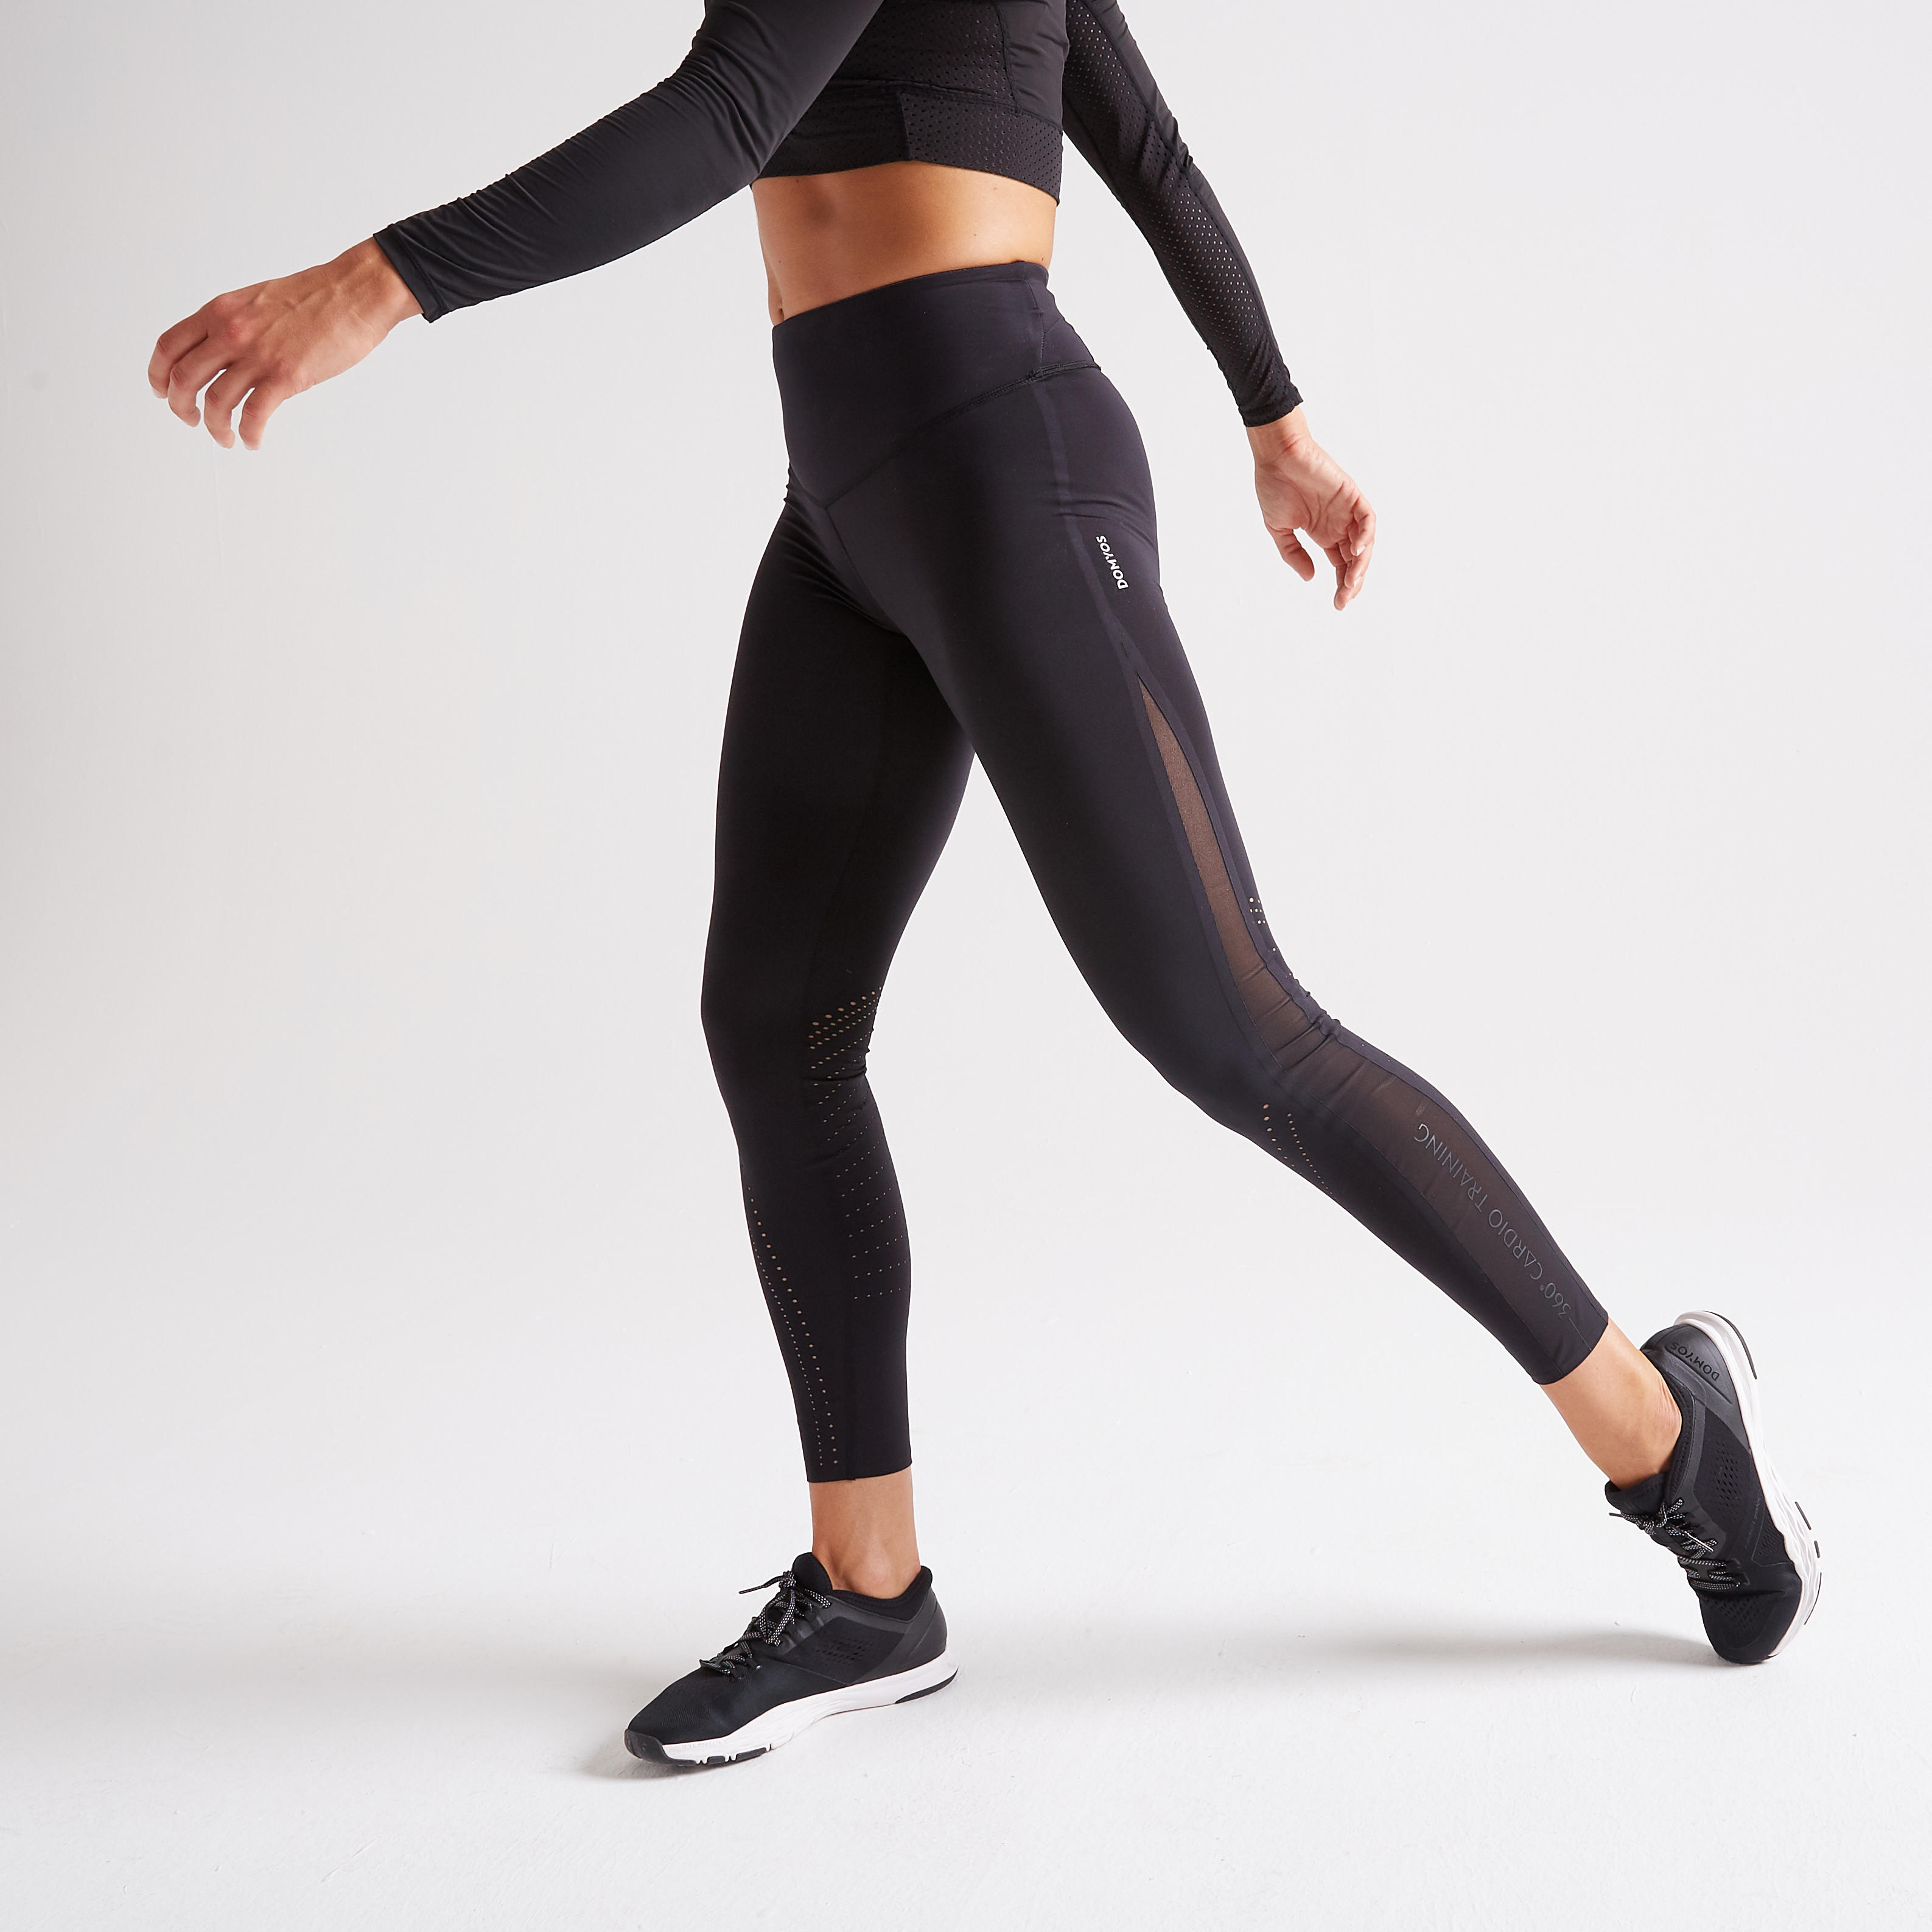 Legging de Sport Taille Haute Femme - ACTIVE Noir